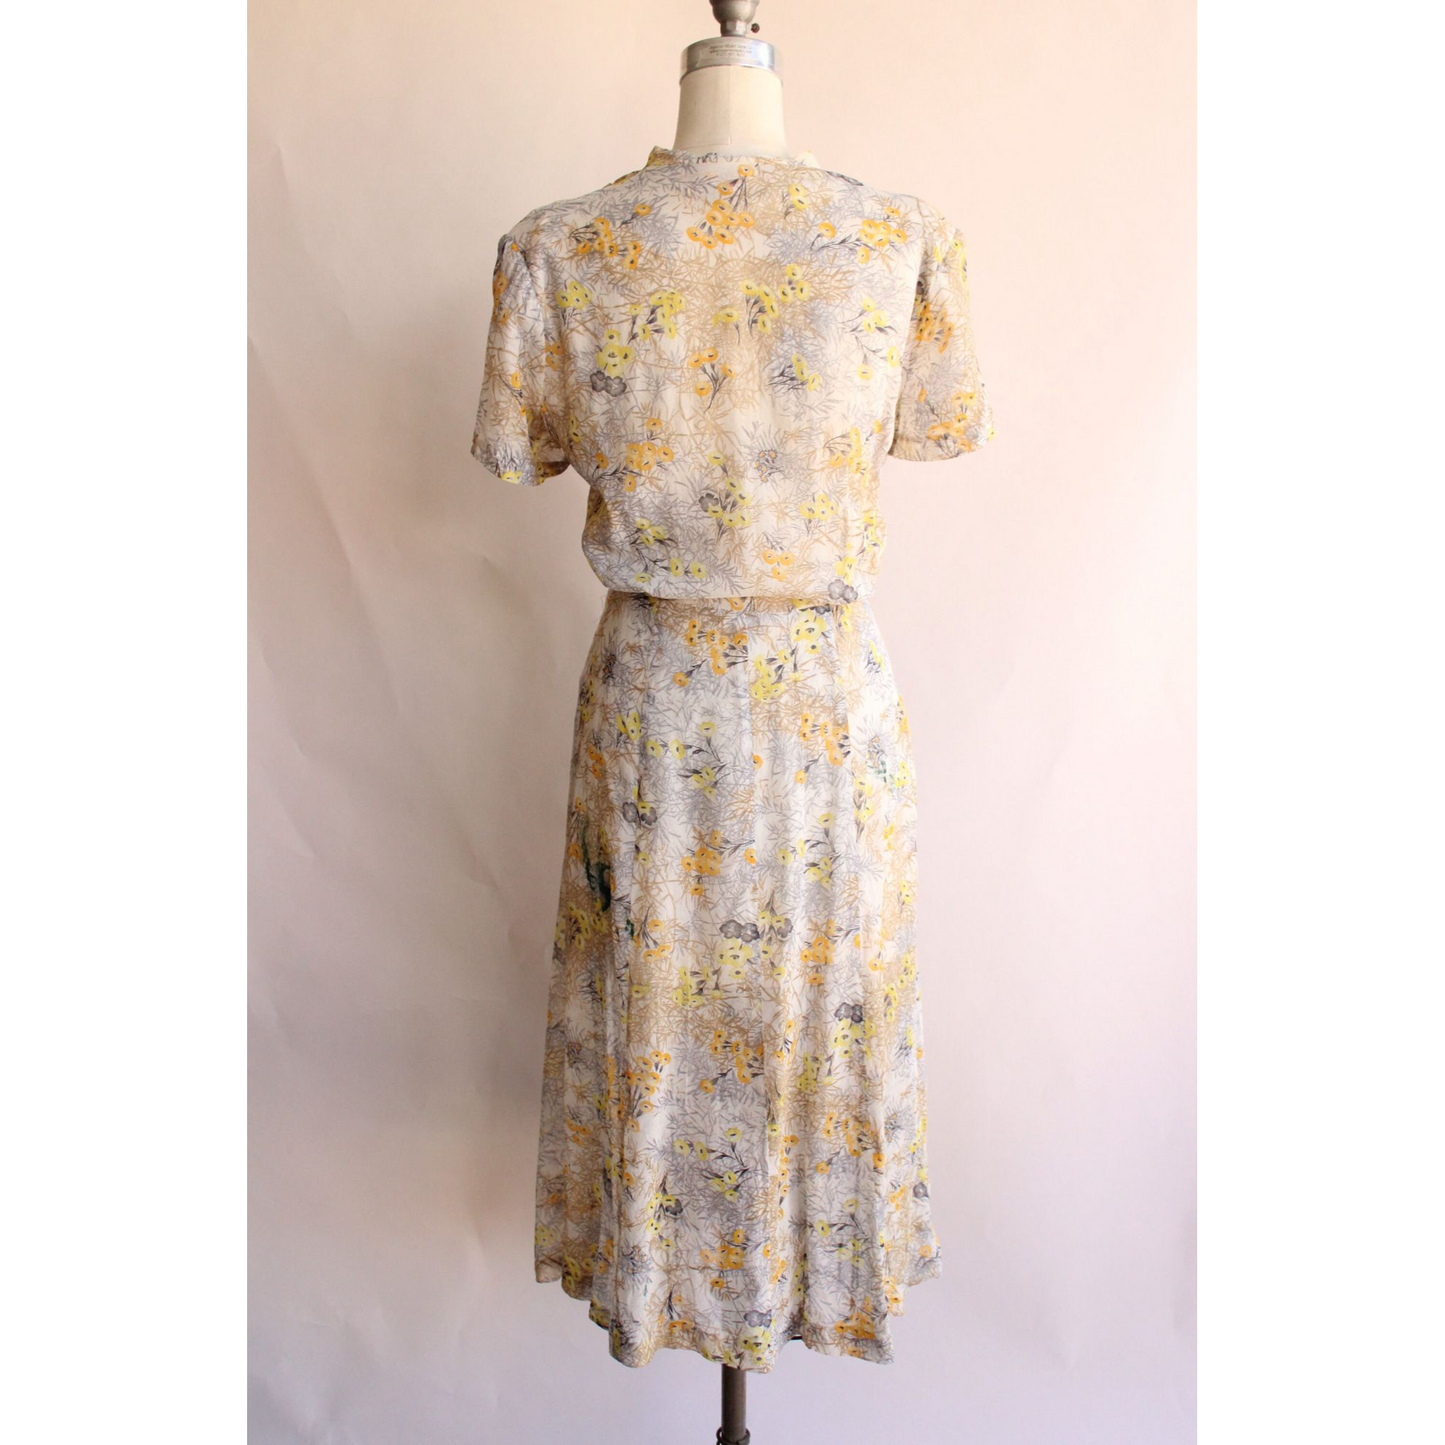 Vintage 1940s Wildflower Print Dress